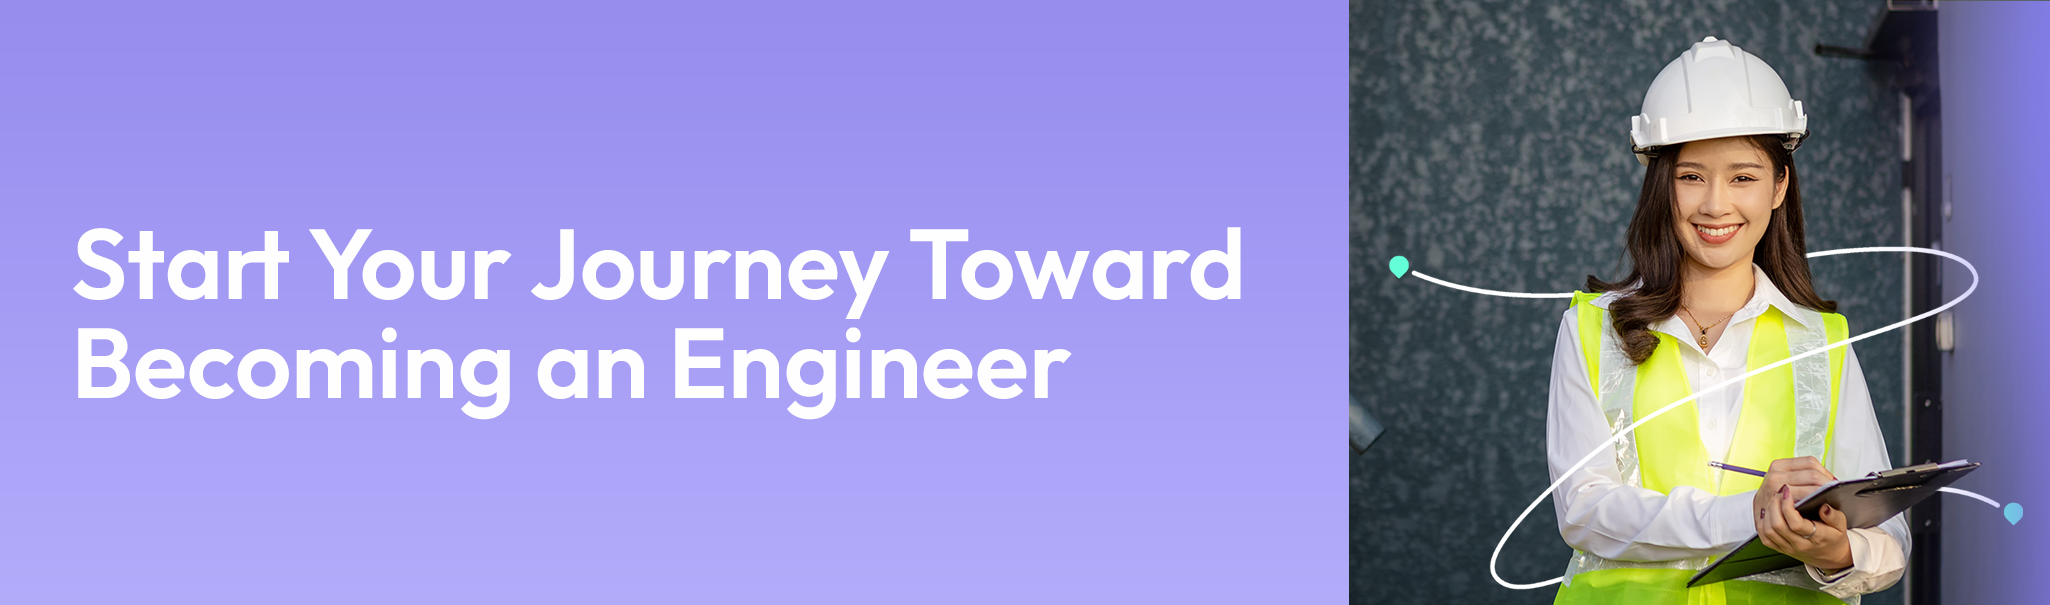 career-guide_engineer Engineering FAQs - AECC Career Guide